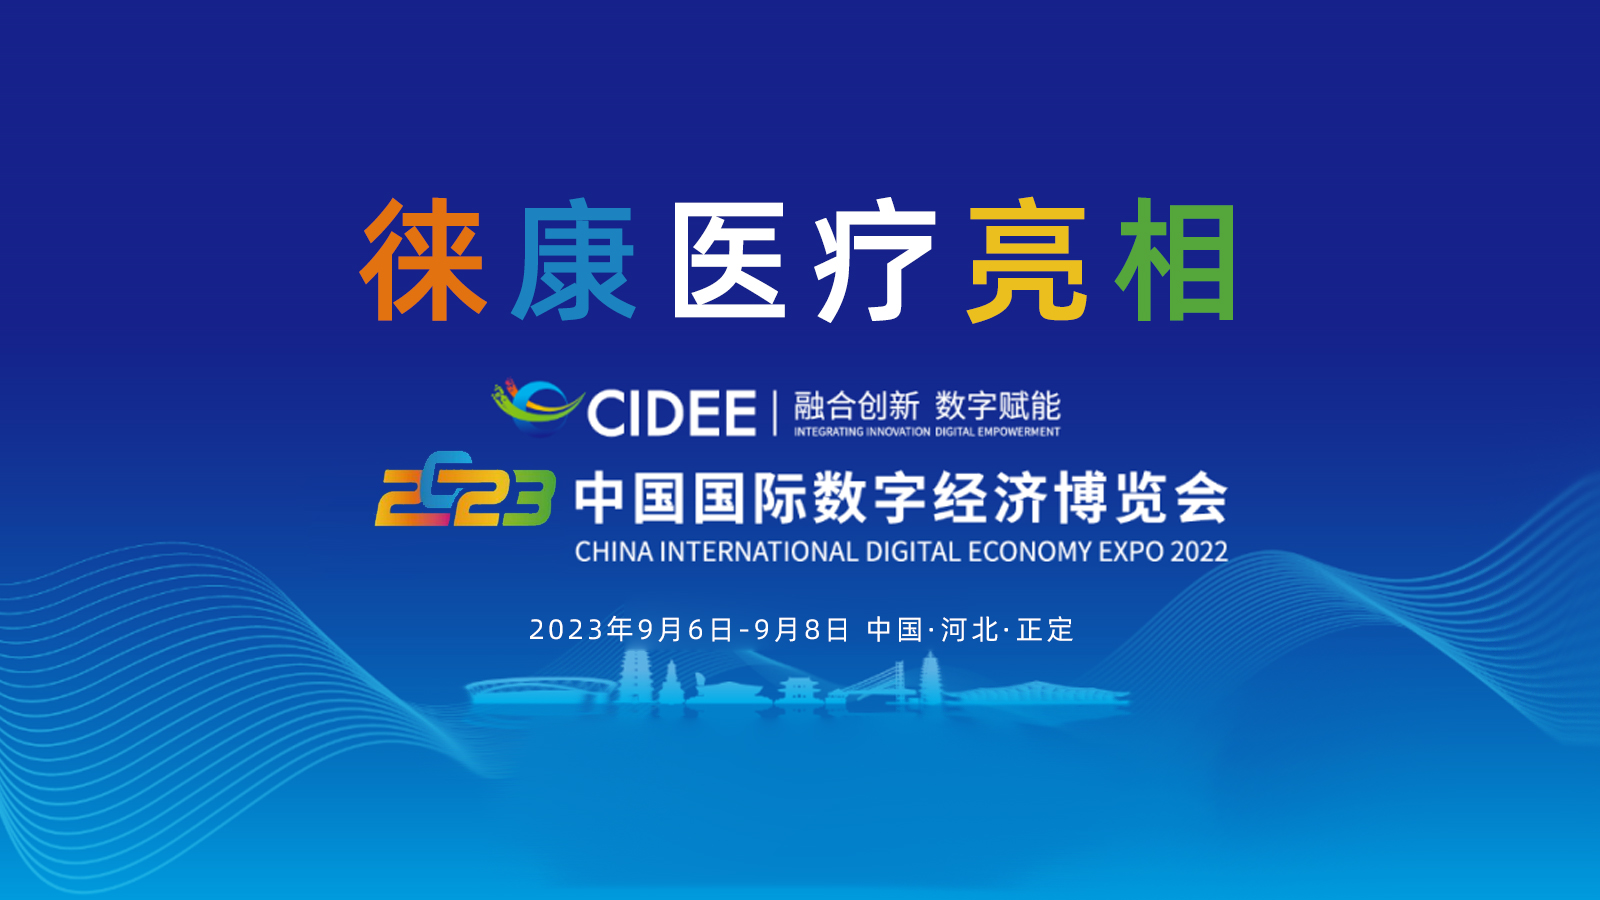 徕康医疗亮相2023中国国际数字经济博览会